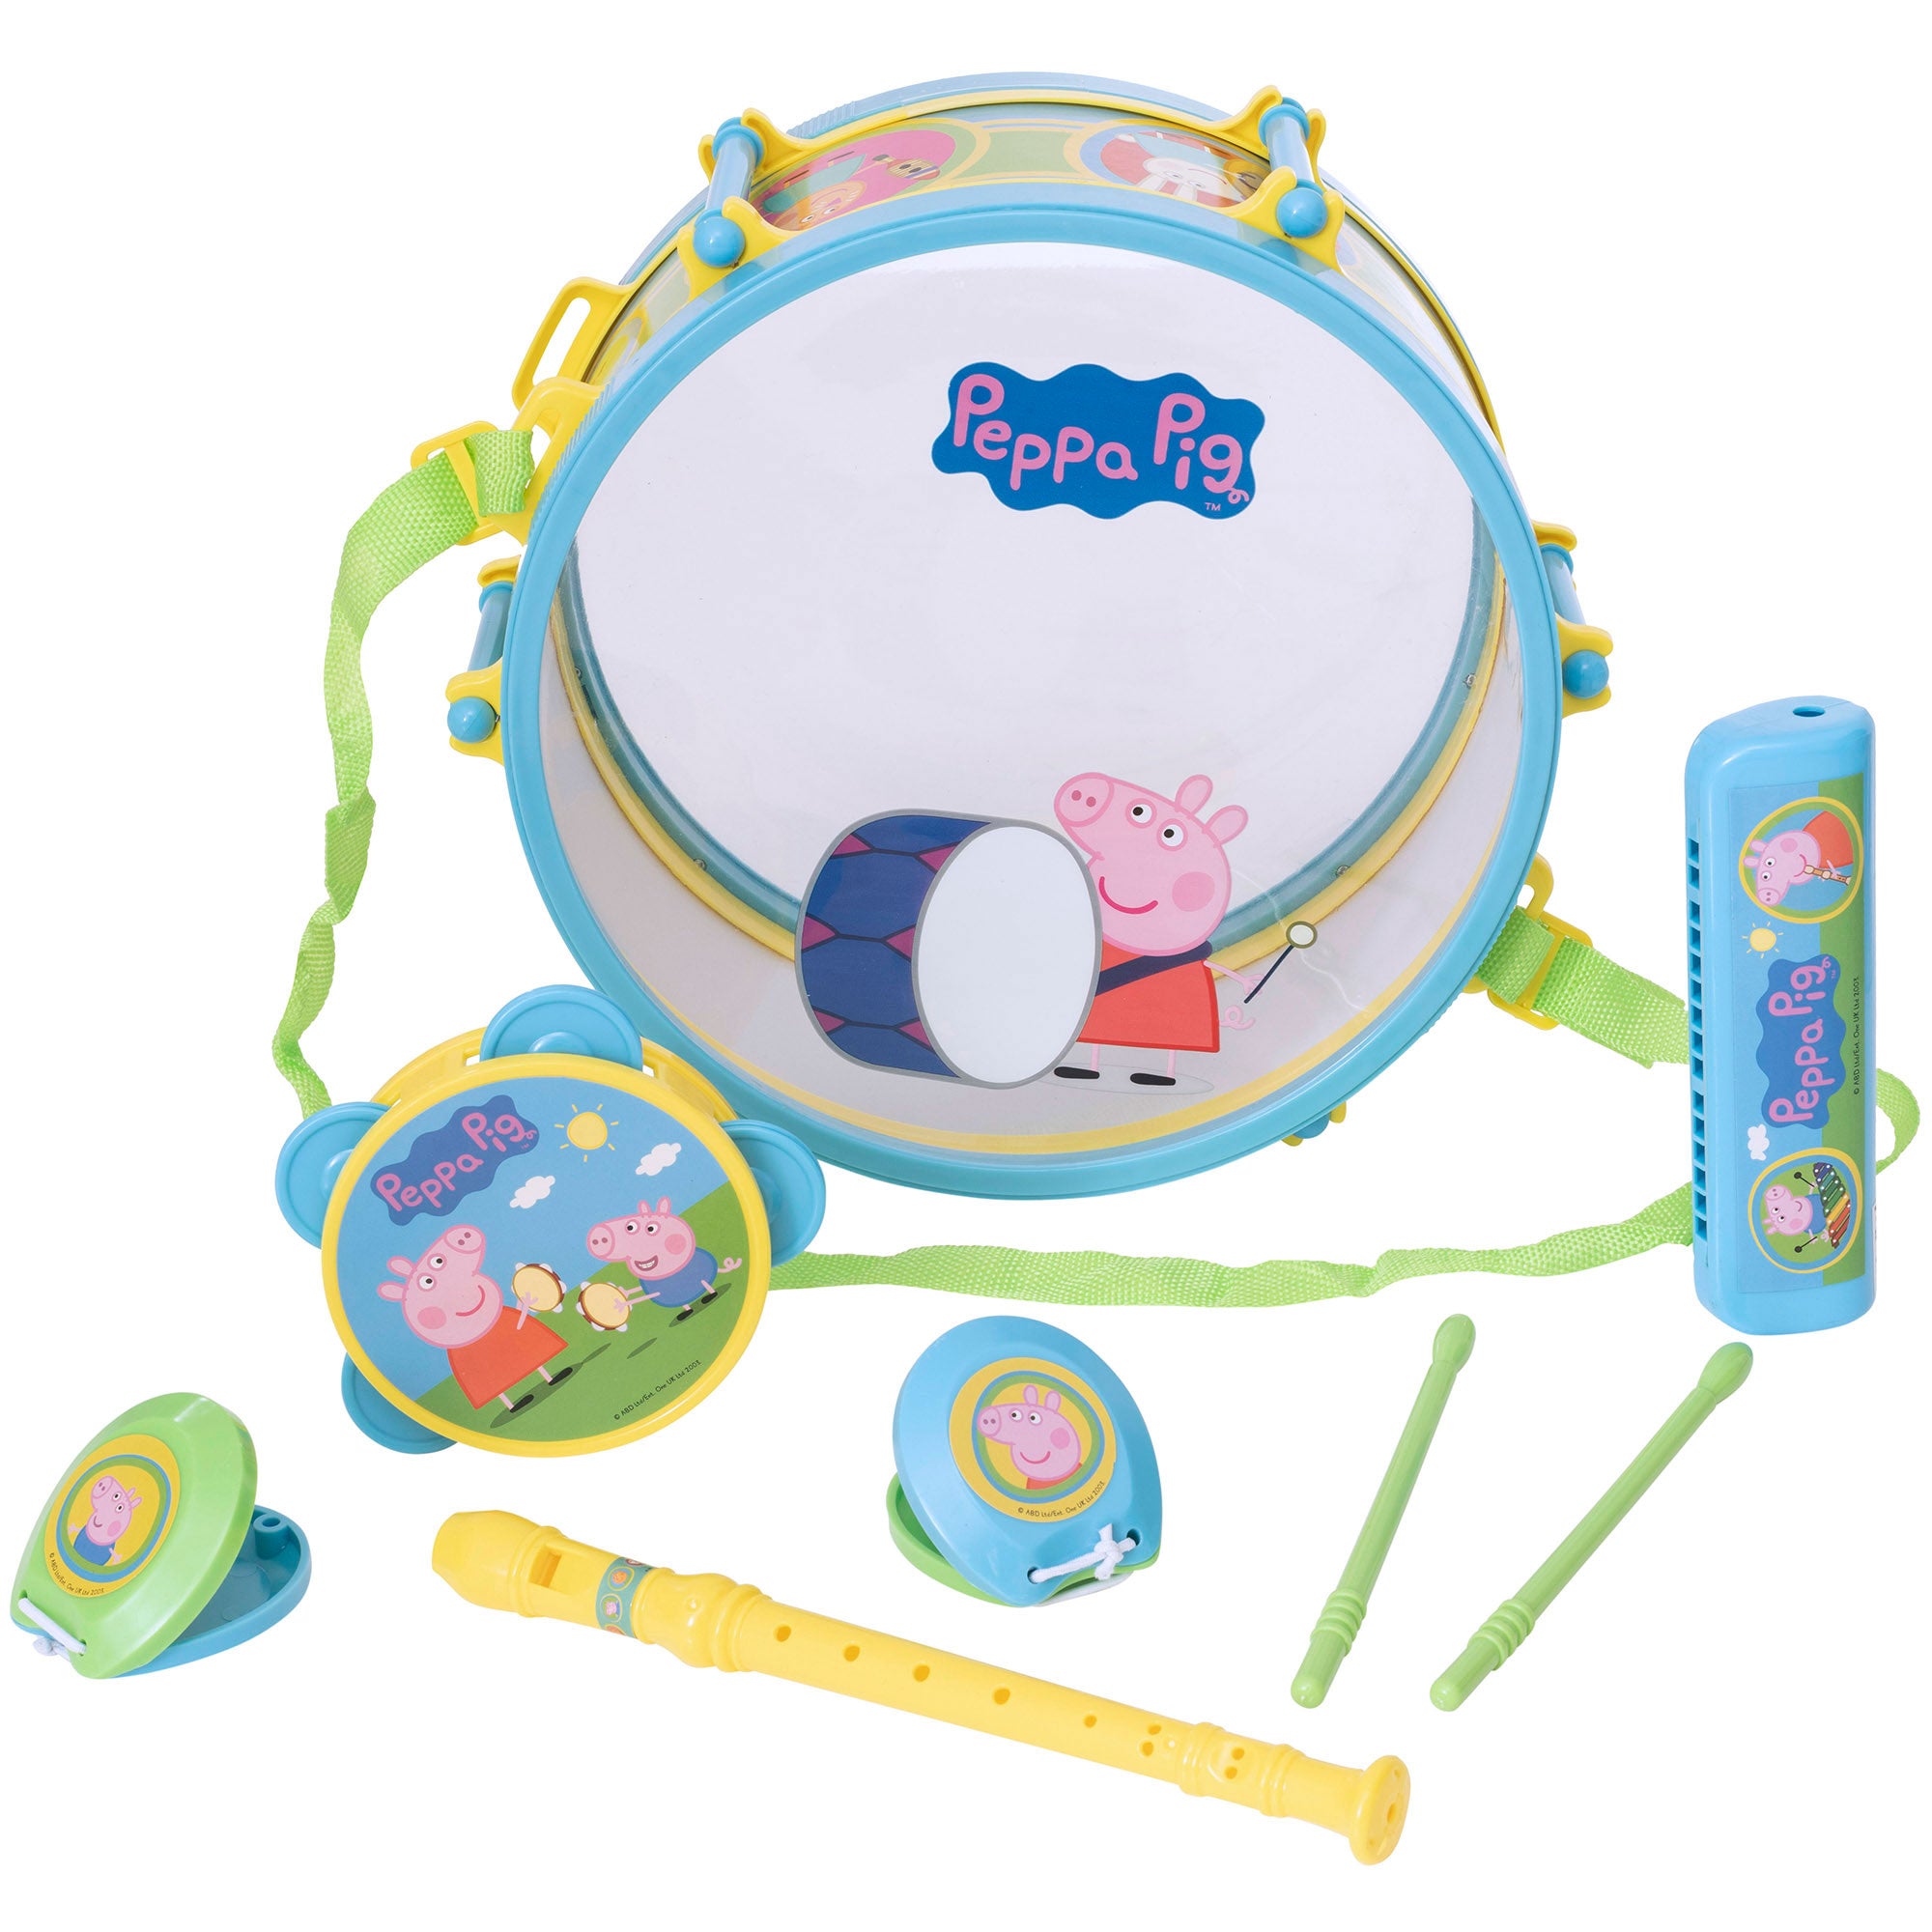 Peppa Pig Toy Drum Set